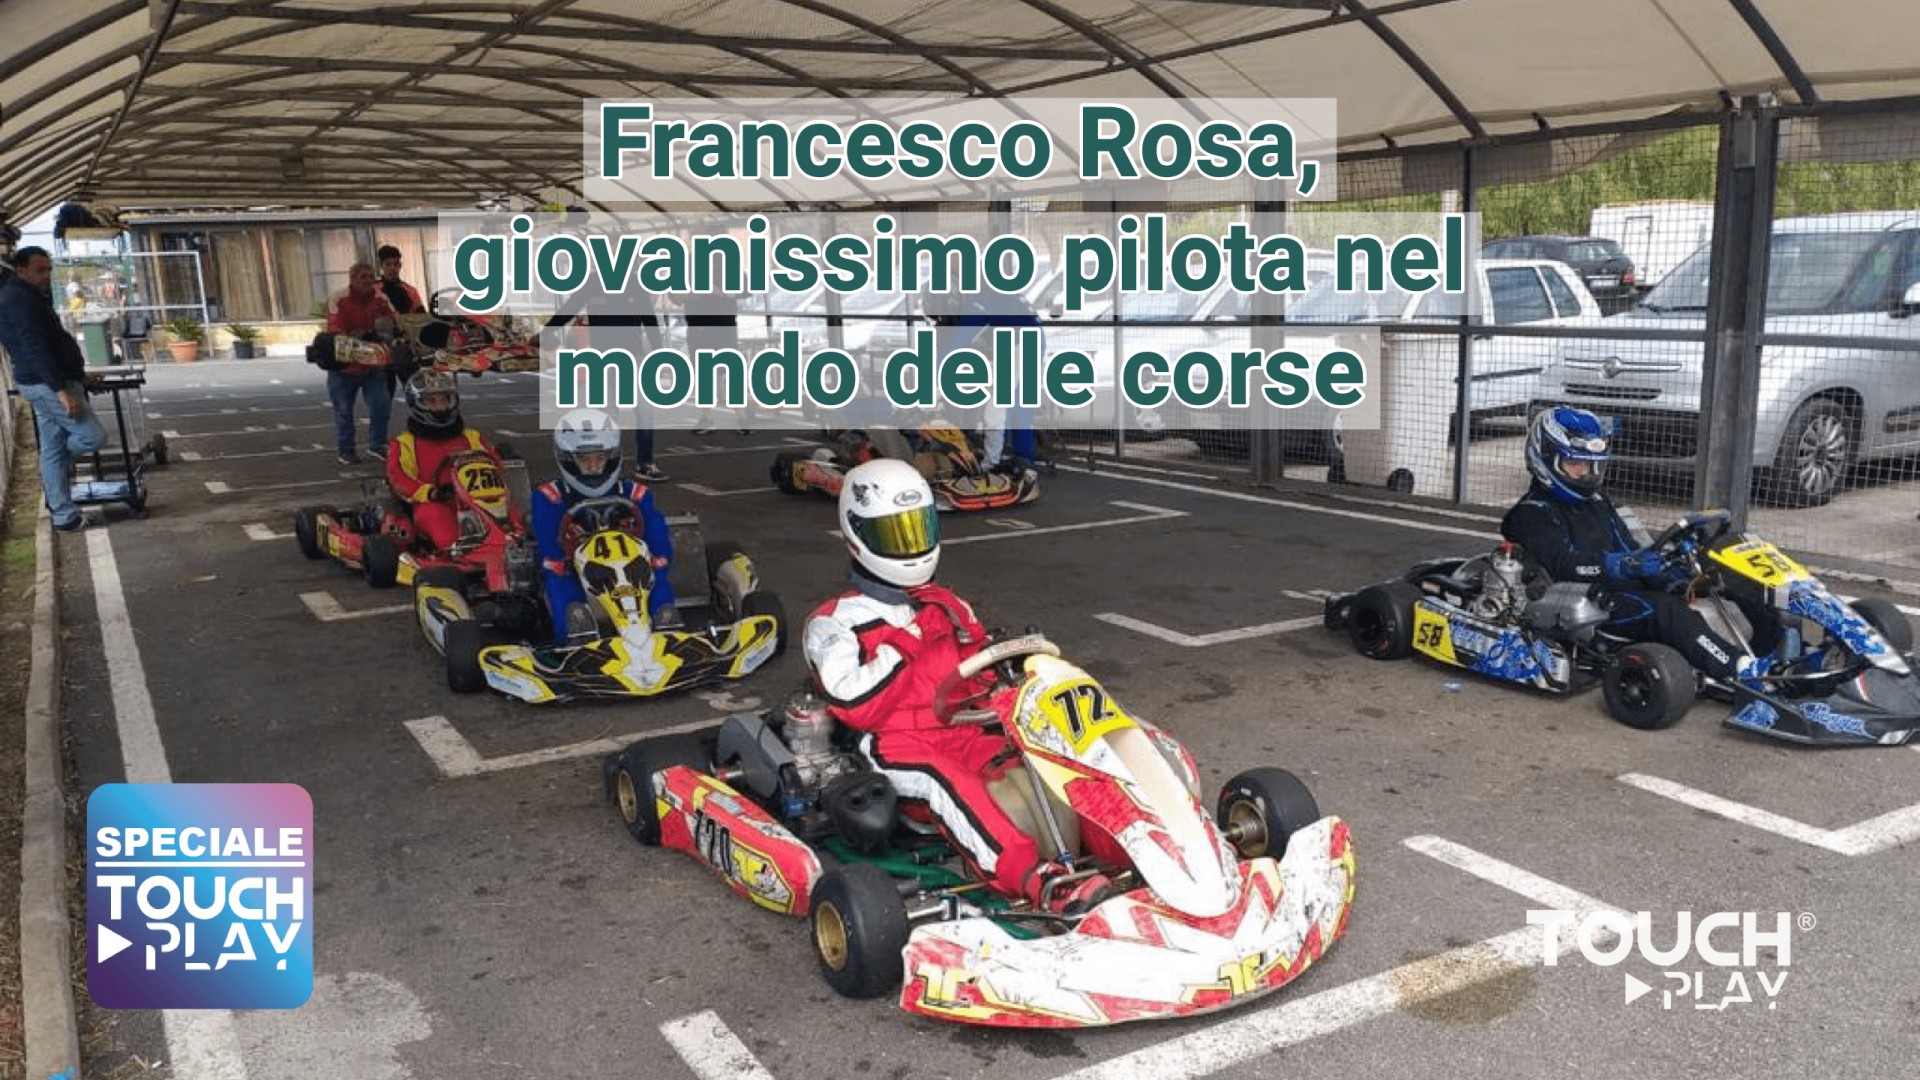 Francesco Rosa giovanissimo pilota nel mondo delle corse